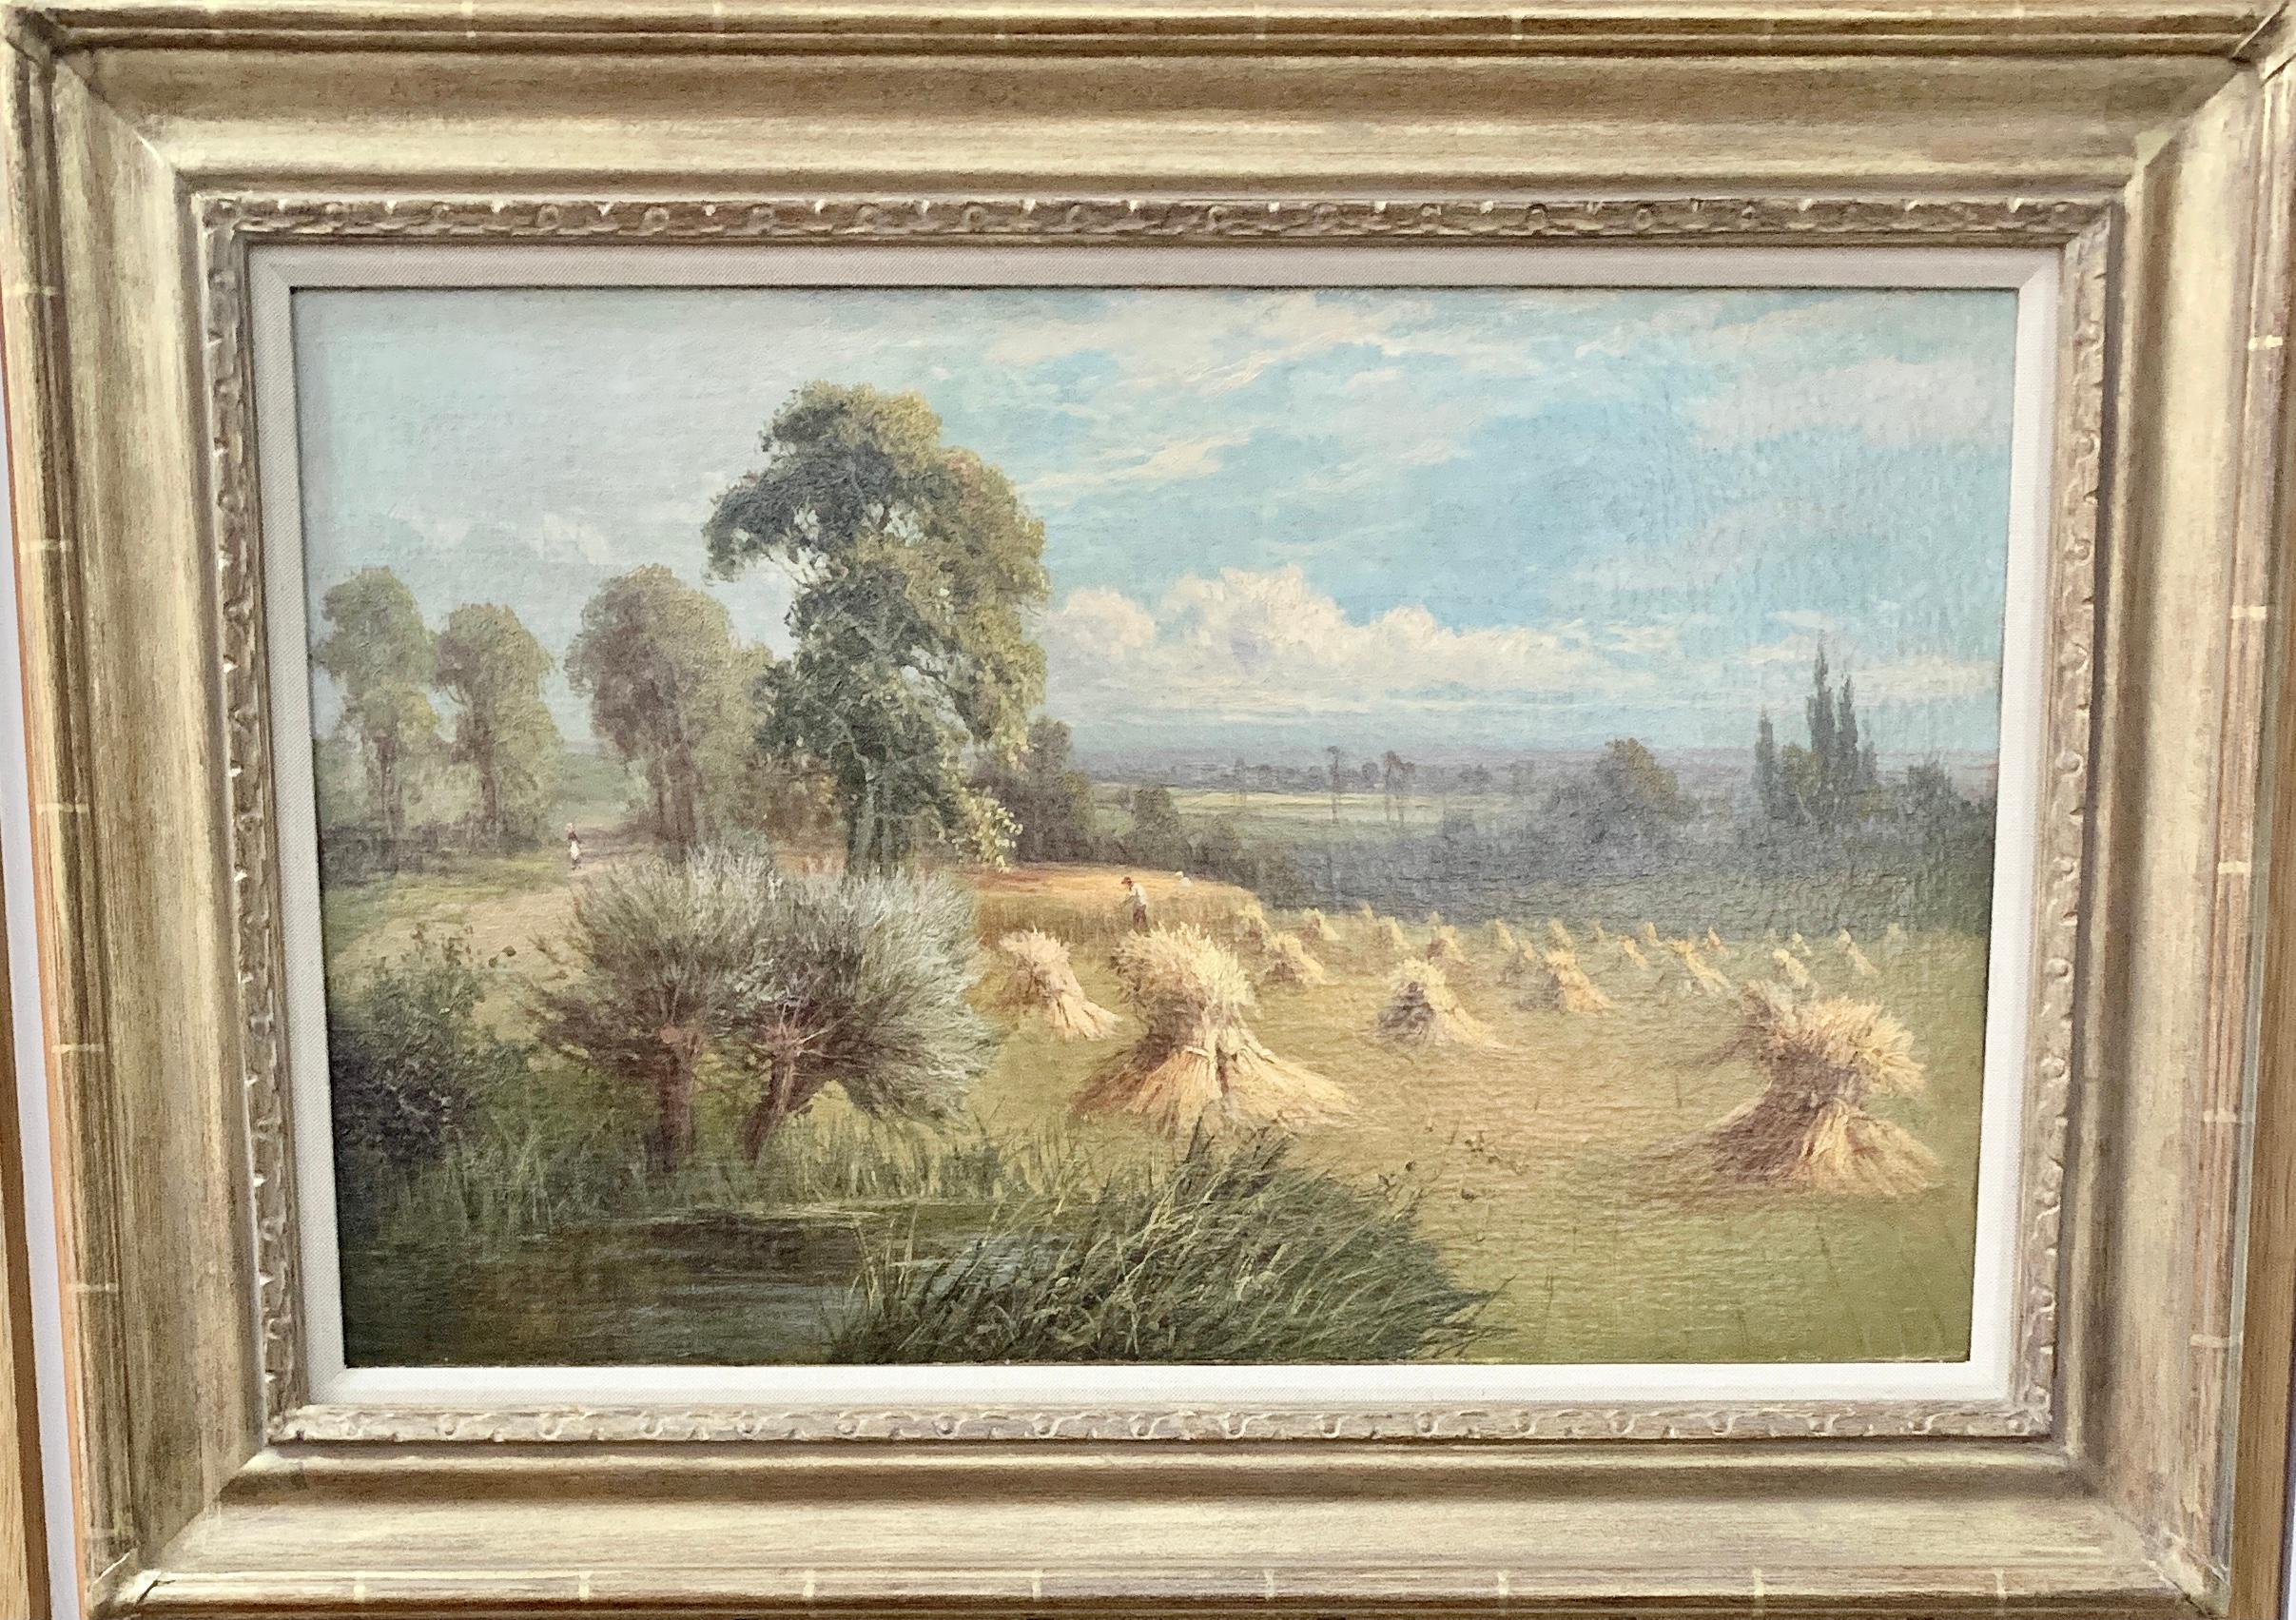 Paysage anglais du 19e siècle avec des fermiers récoltant le foin, un étang et un saule.